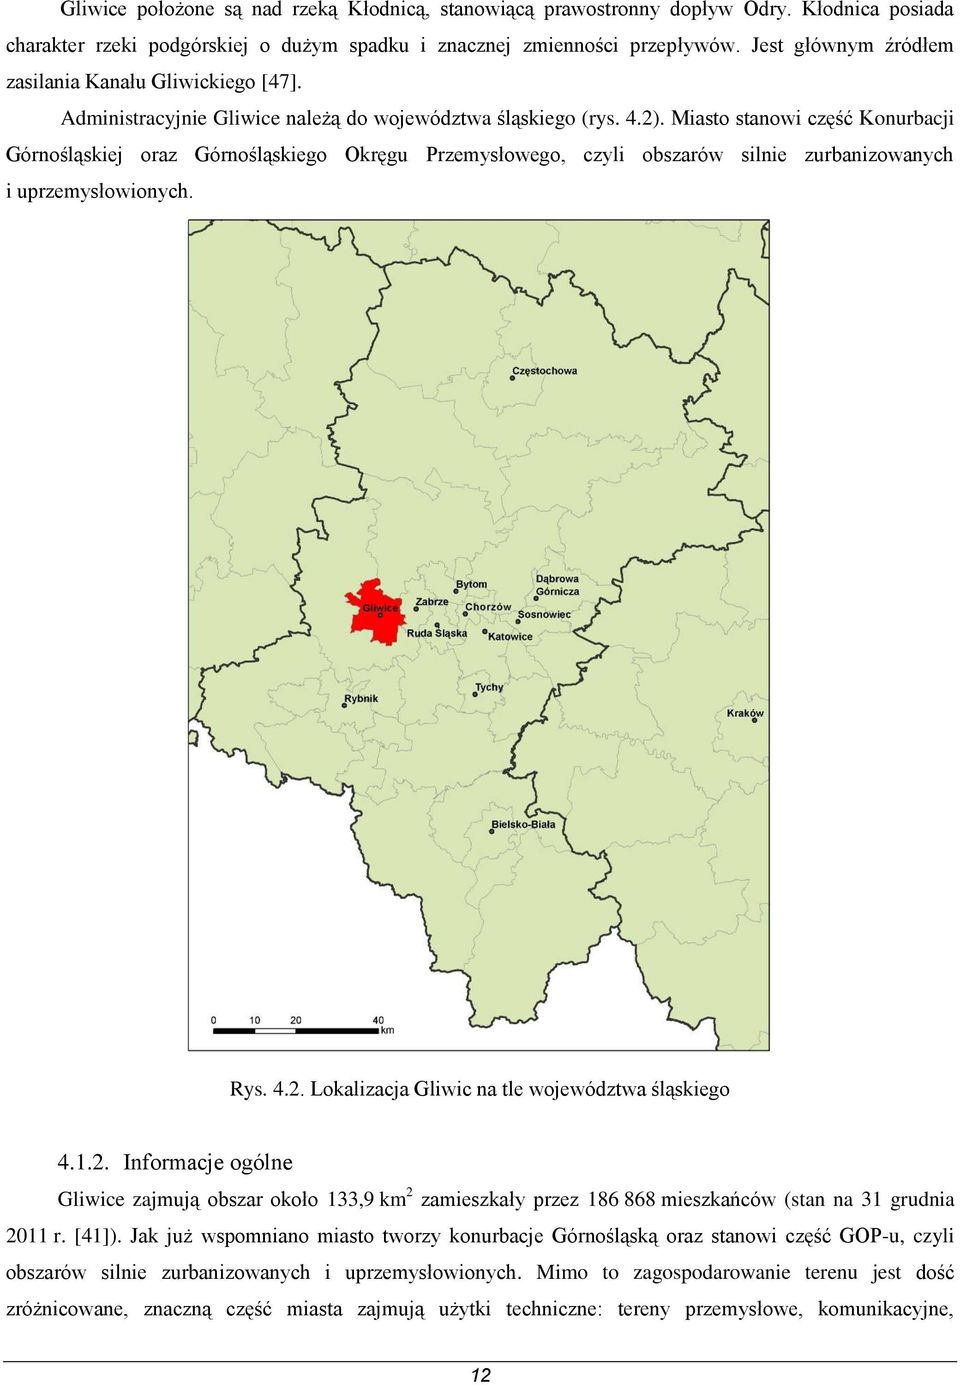 Miasto stanowi część Konurbacji Górnośląskiej oraz Górnośląskiego Okręgu Przemysłowego, czyli obszarów silnie zurbanizowanych i uprzemysłowionych. Rys. 4.2.